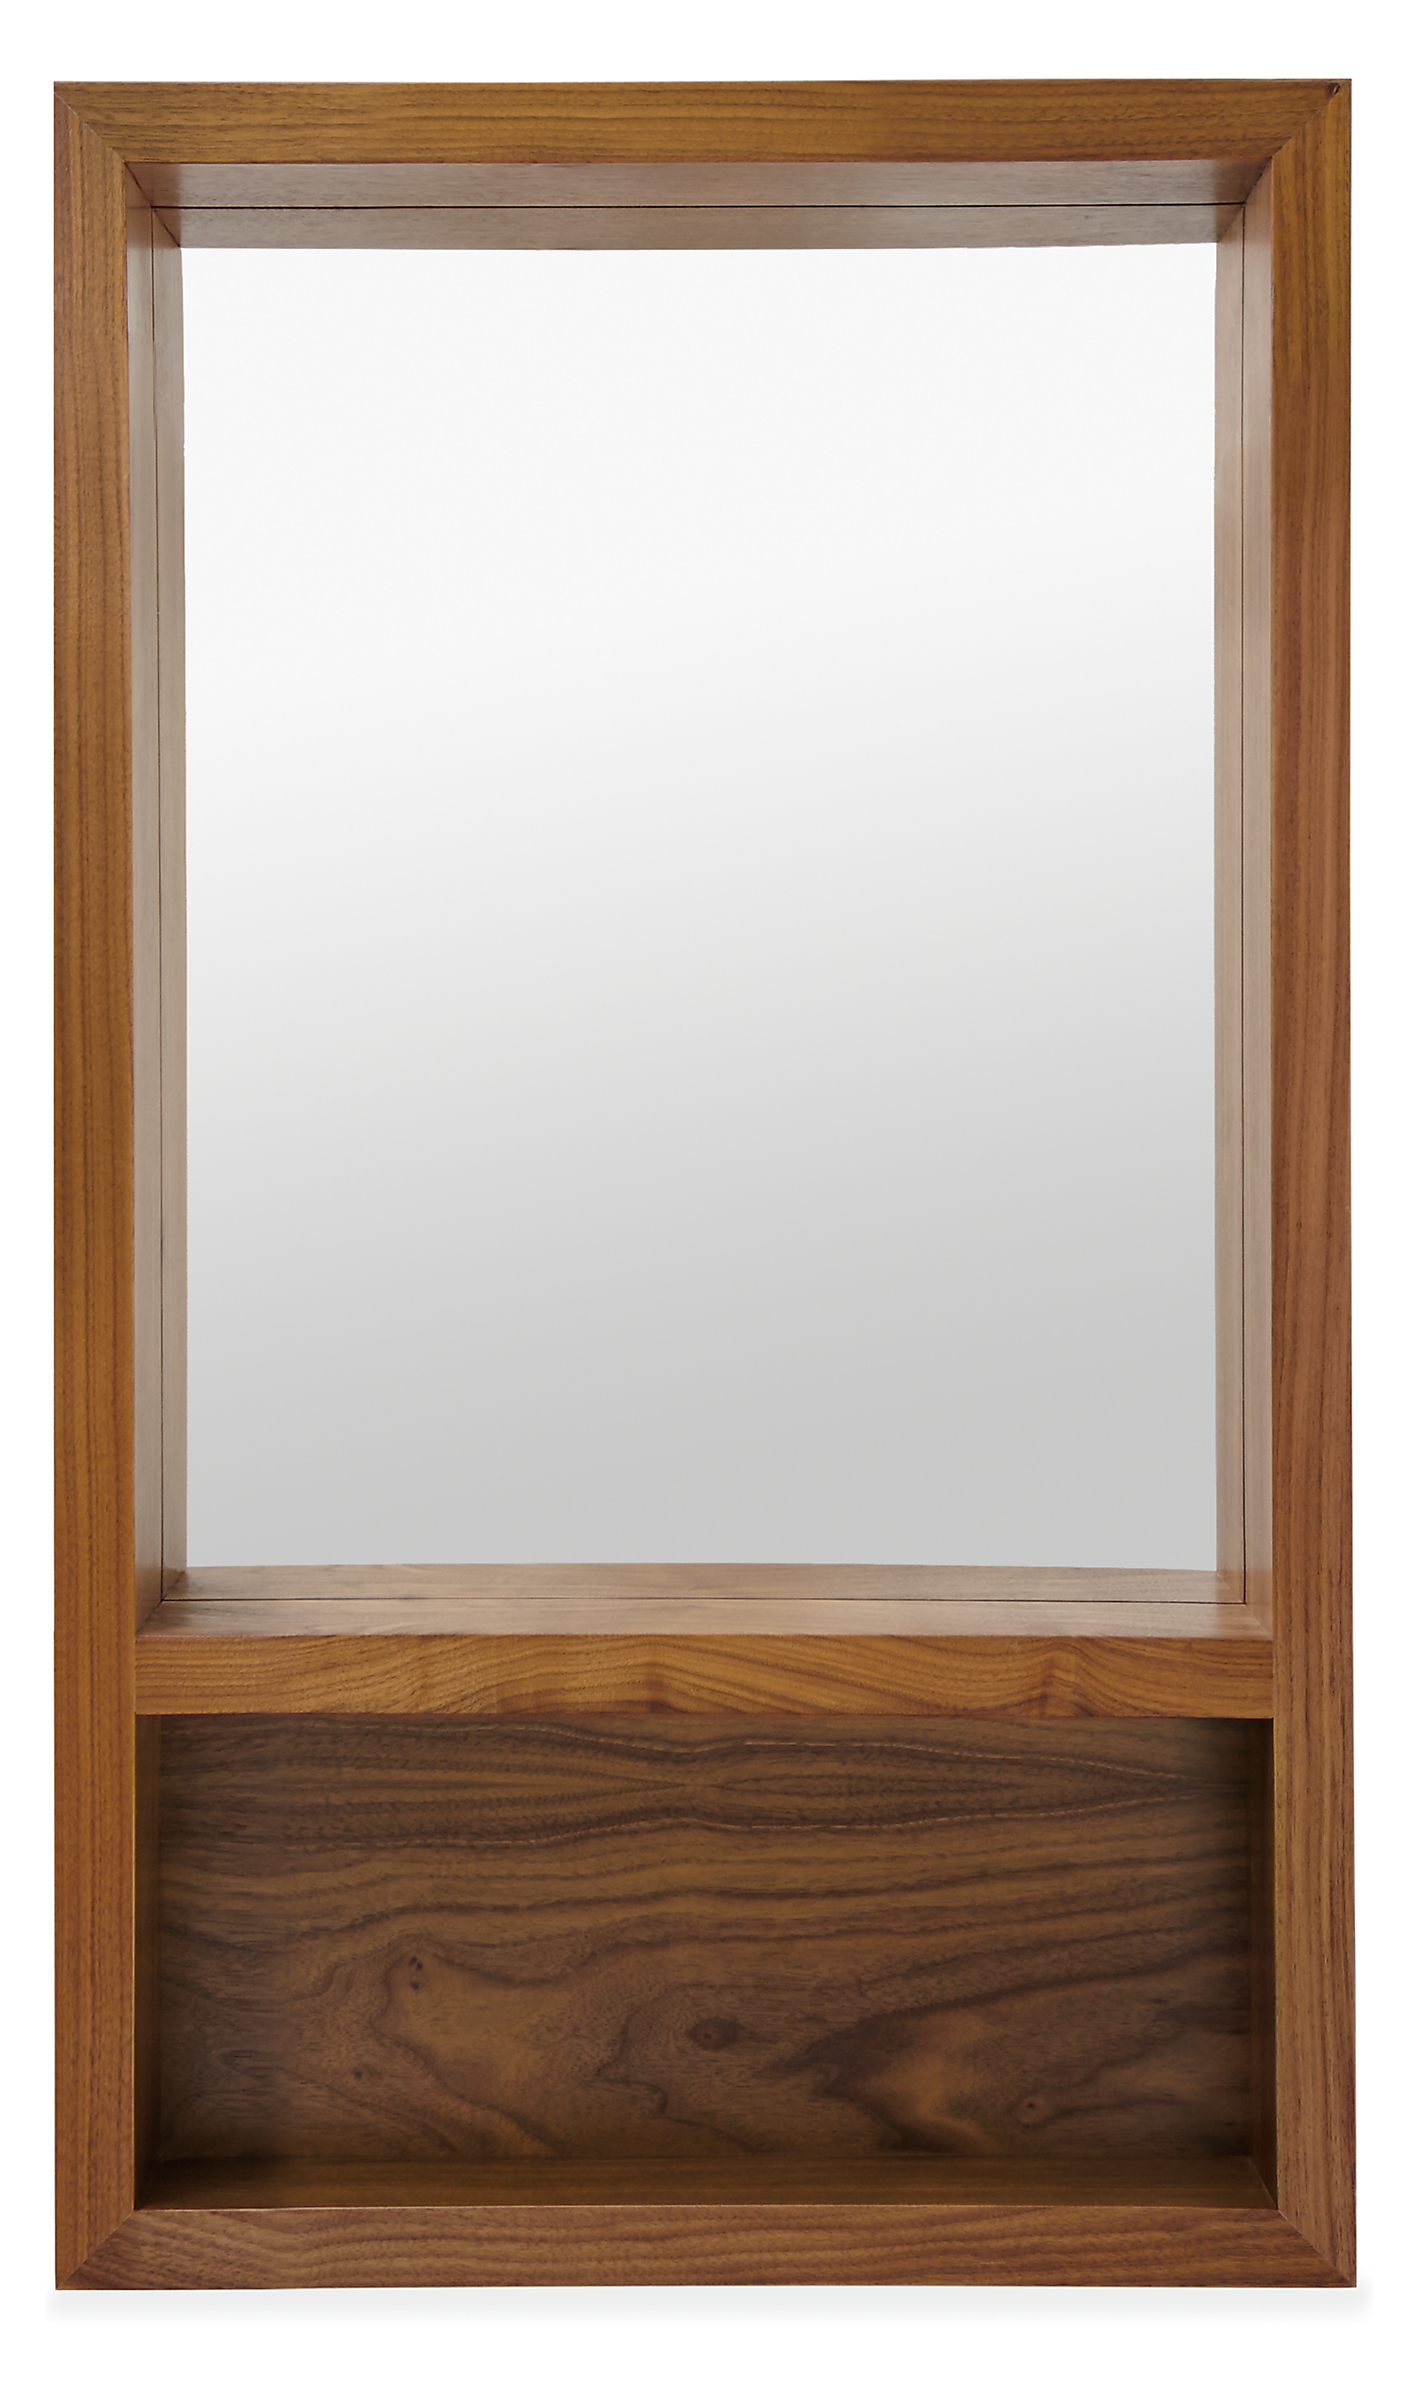 Loft 20w 4.5d 34h Mirror with Shelf